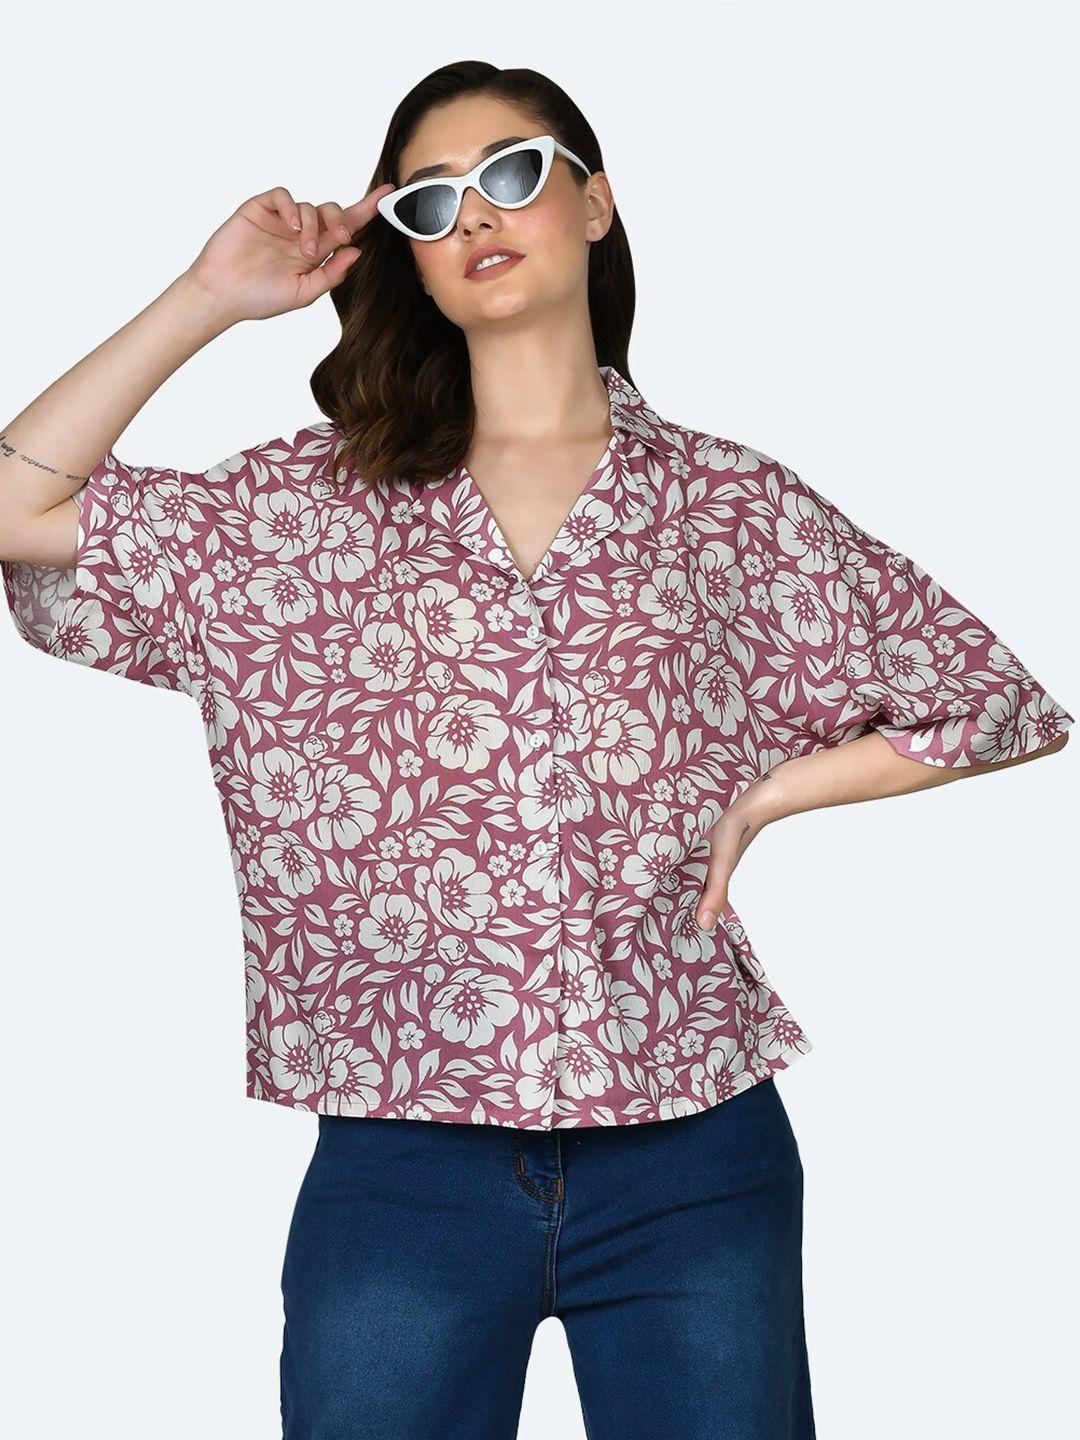 zink london floral printed boxy shirt